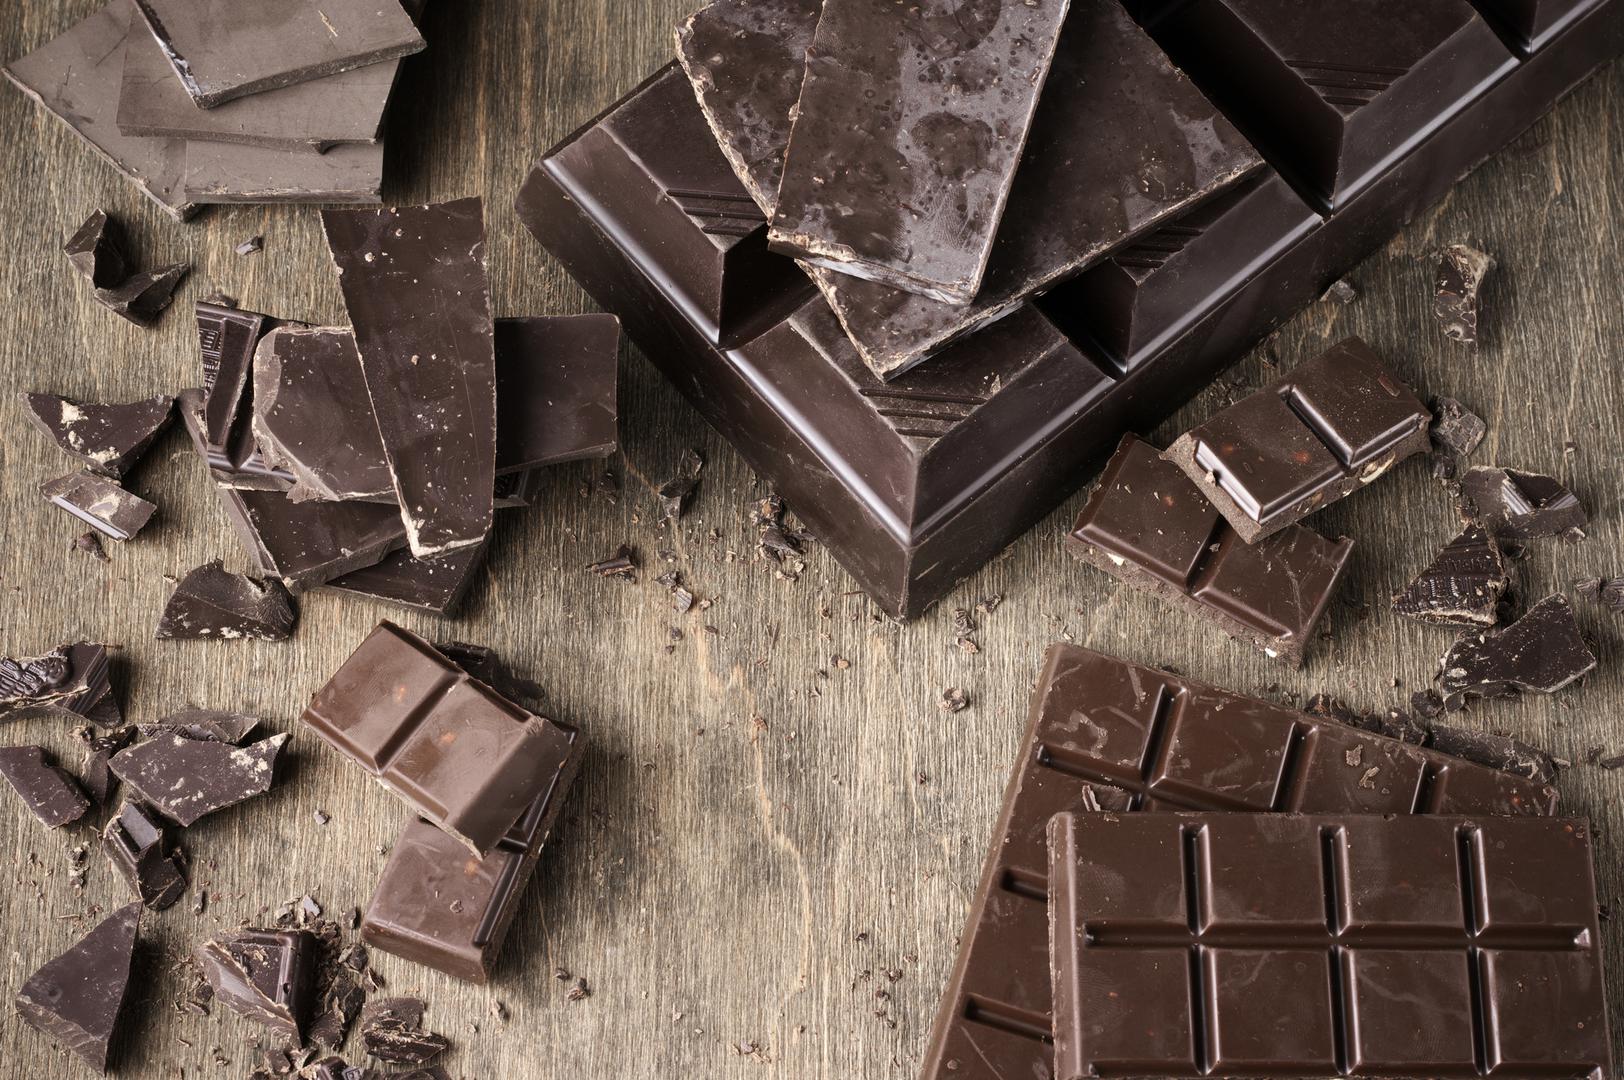 9. ČOKOLADA - Svoju želju za čokoladom možete jednostavno zadovoljiti uz pomoć nekoliko kockica tamne čokolade. Ili, ako je želite jesti u desertu, isprobajte čokoladni mousse ili nekoliko avokado tartufa od tamne čokolade. Kakao prahom koristite se po želji.